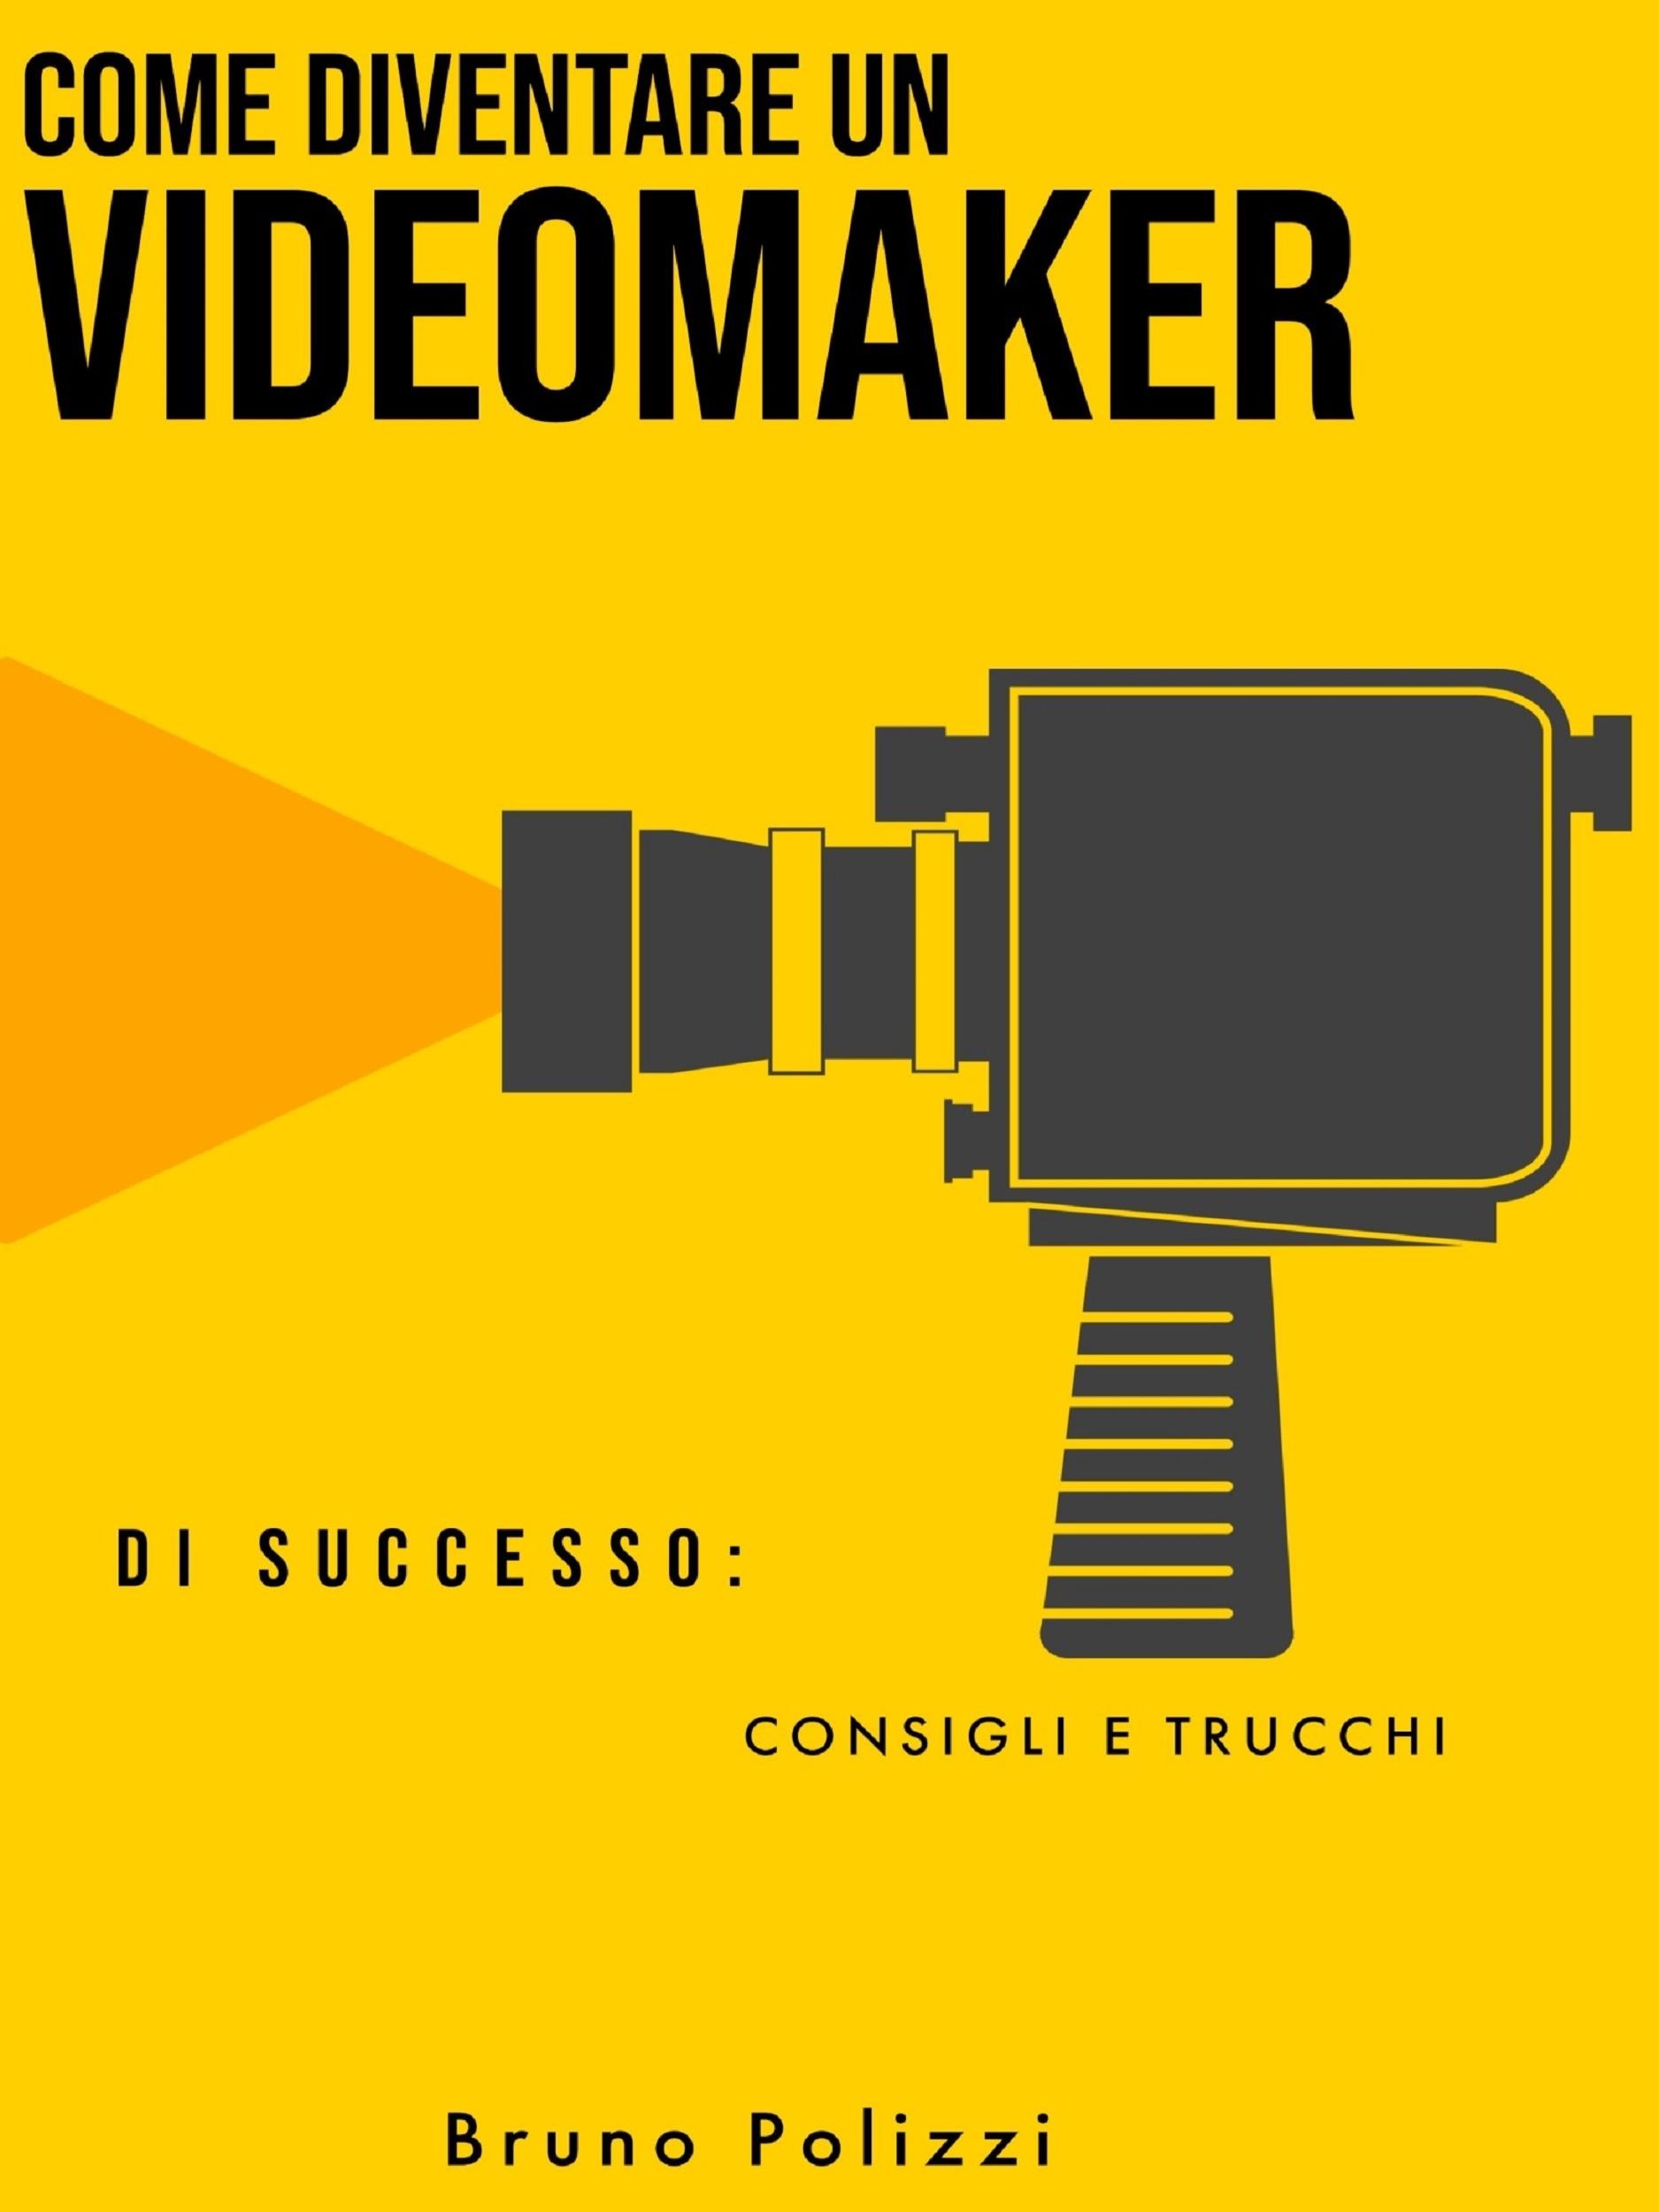 Come diventare un videomaker di successo: consigli e trucchi